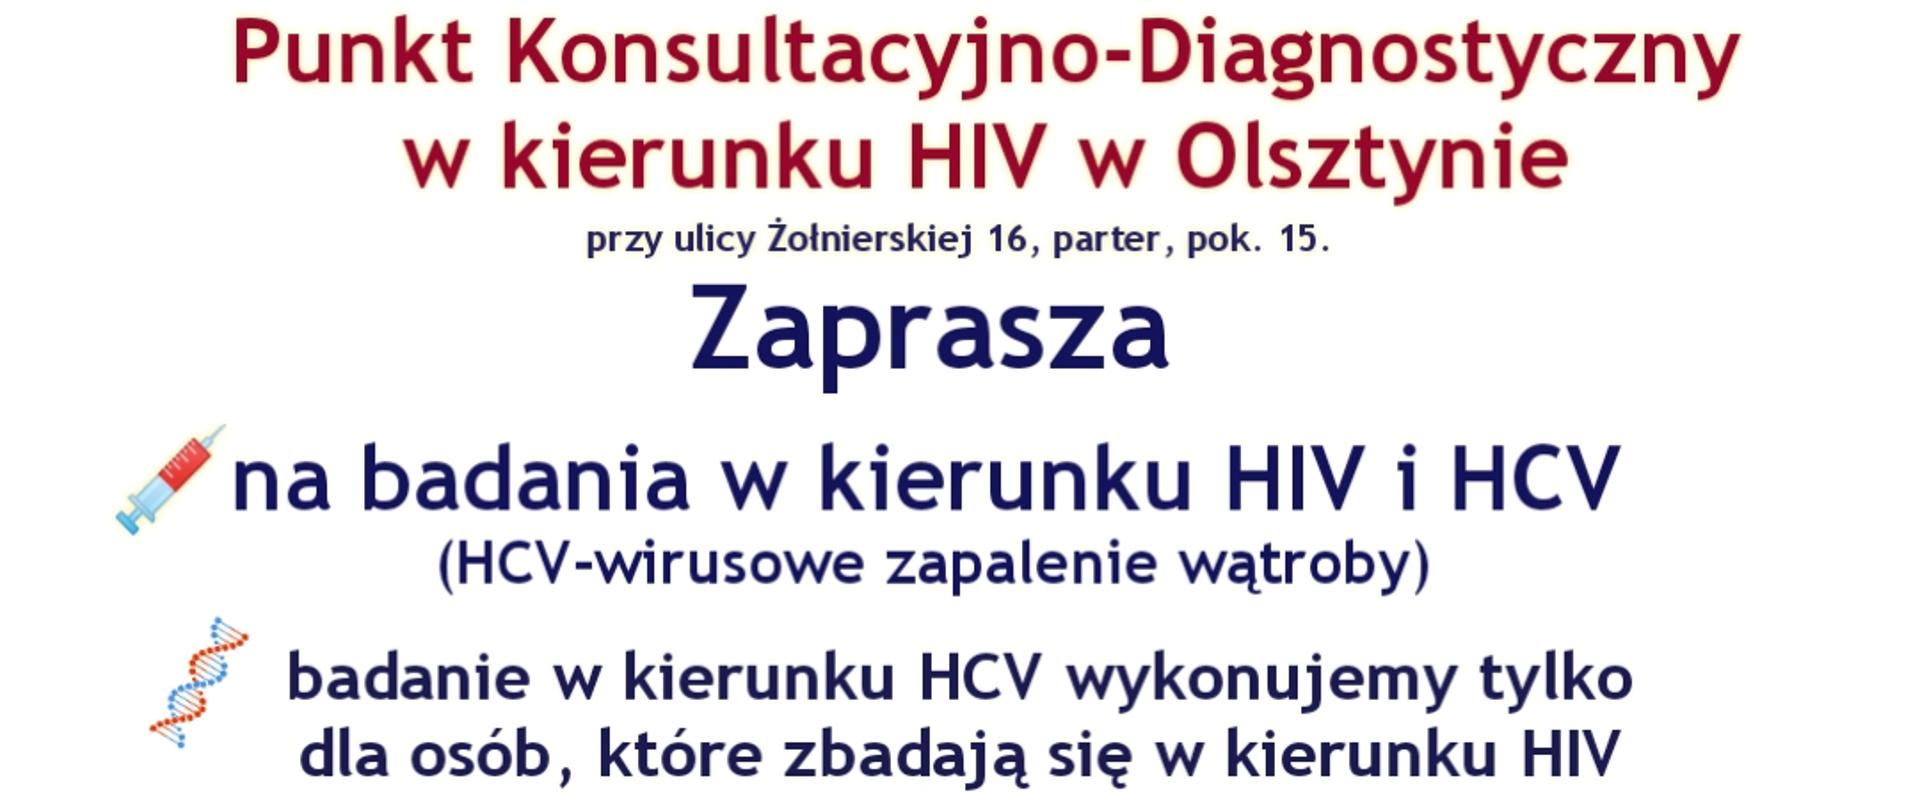 Punkt Konsultacyjno- Diagnostyczny w kierunku HIV w Olsztynie